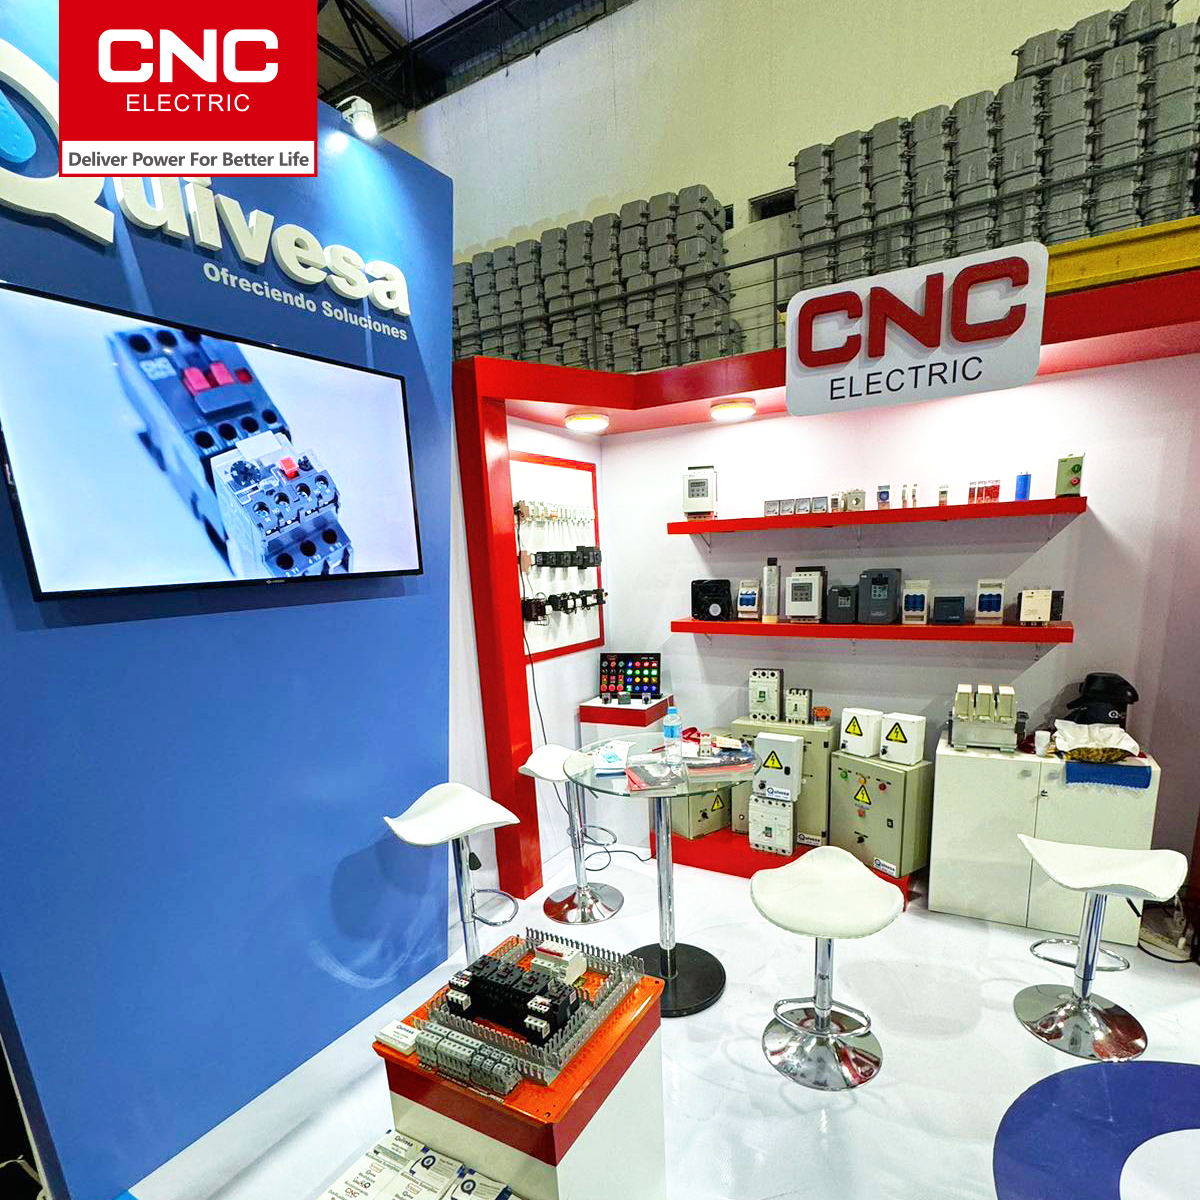 CNC |CNC Electric amin'ny fampirantiana any Paragoay